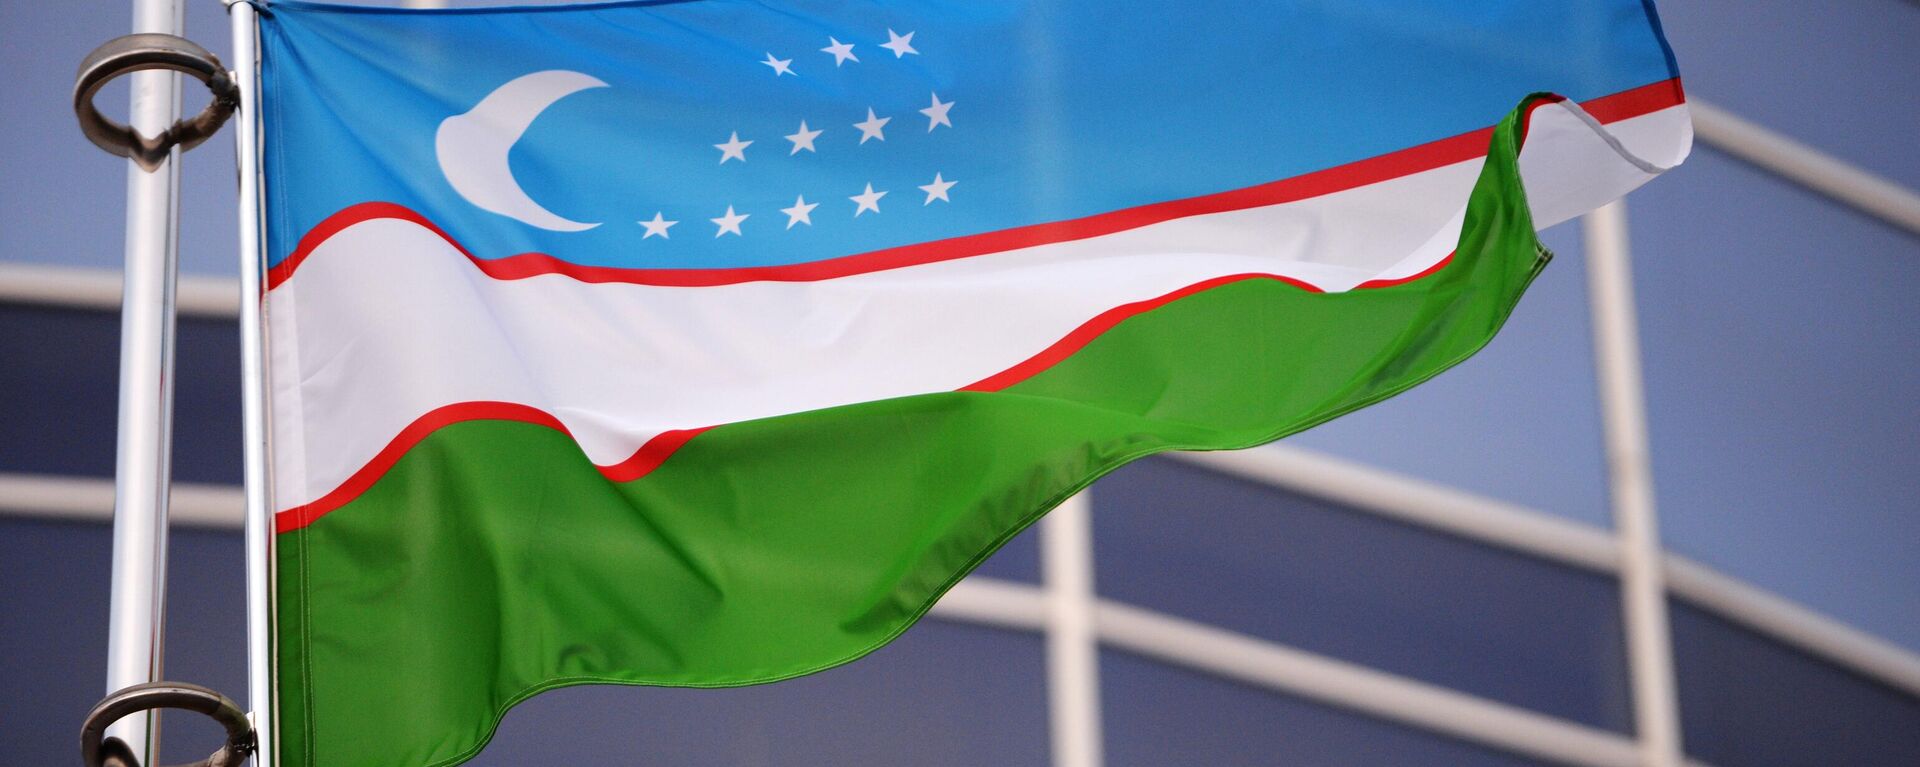 Флаг Узбекистана - Sputnik Узбекистан, 1920, 02.09.2021